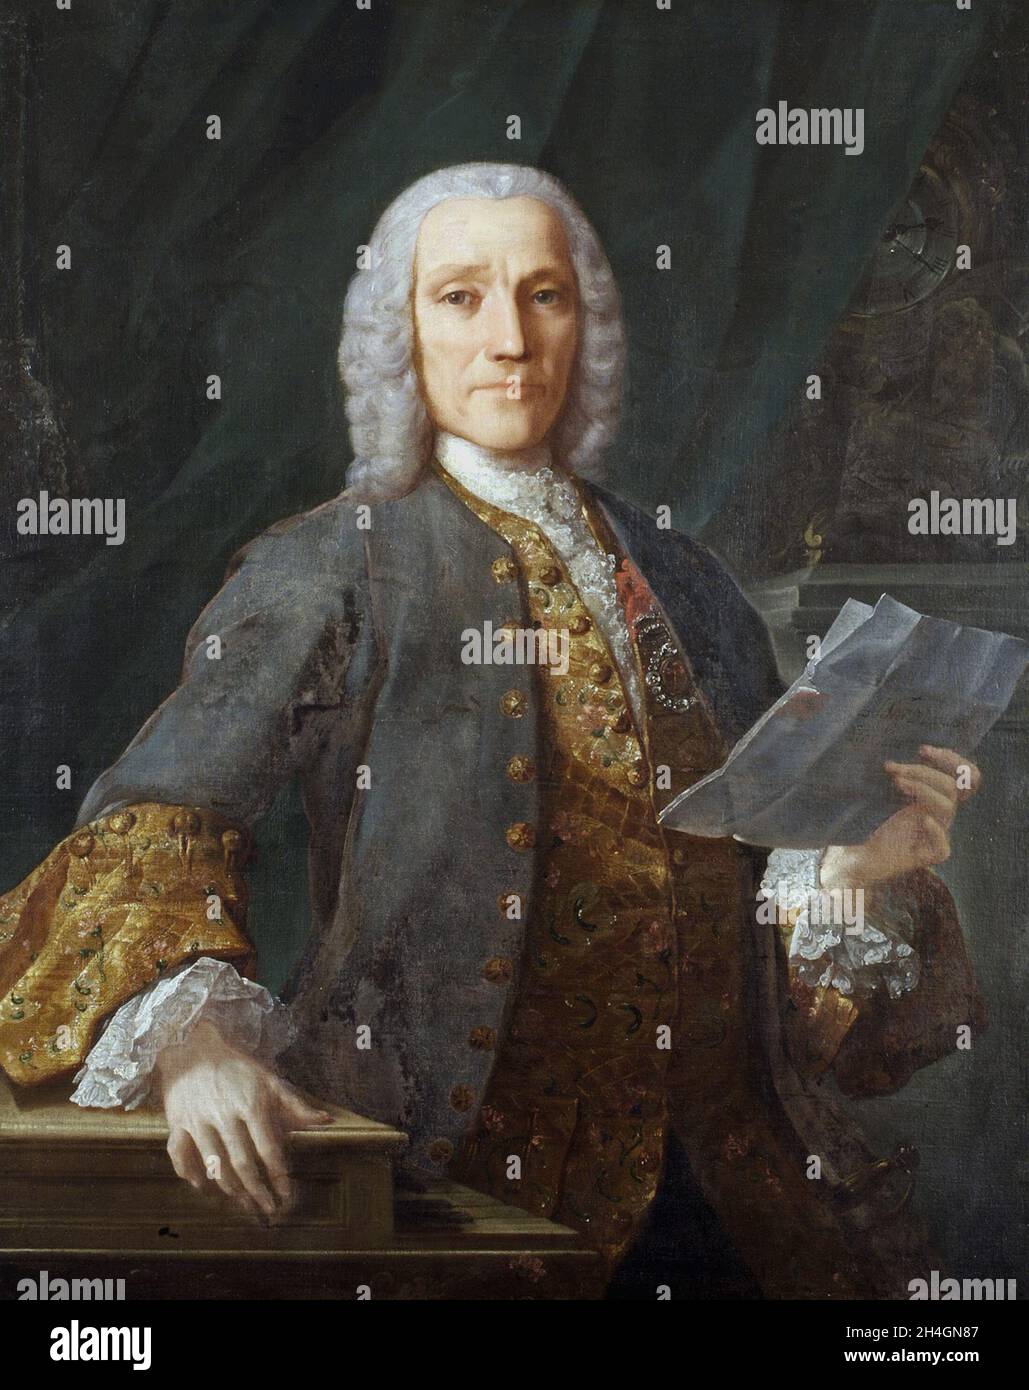 A portrait of the Italian composer Domenico Scarlatti Stock Photo